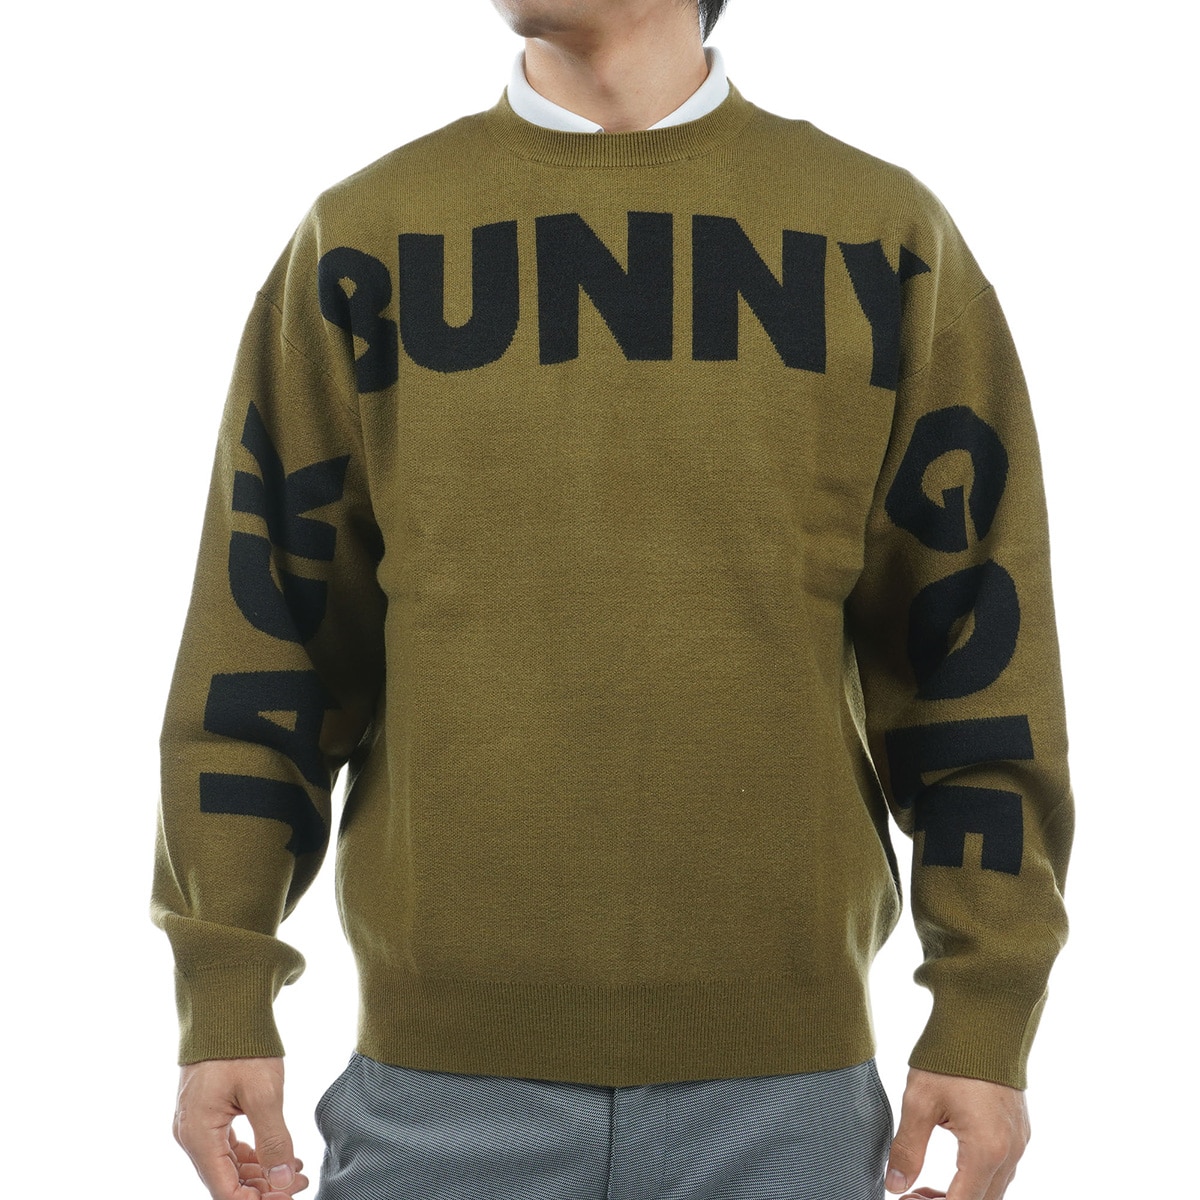 ジャックバニー(Jack Bunny!!) セーター 通販｜GDOゴルフショップ